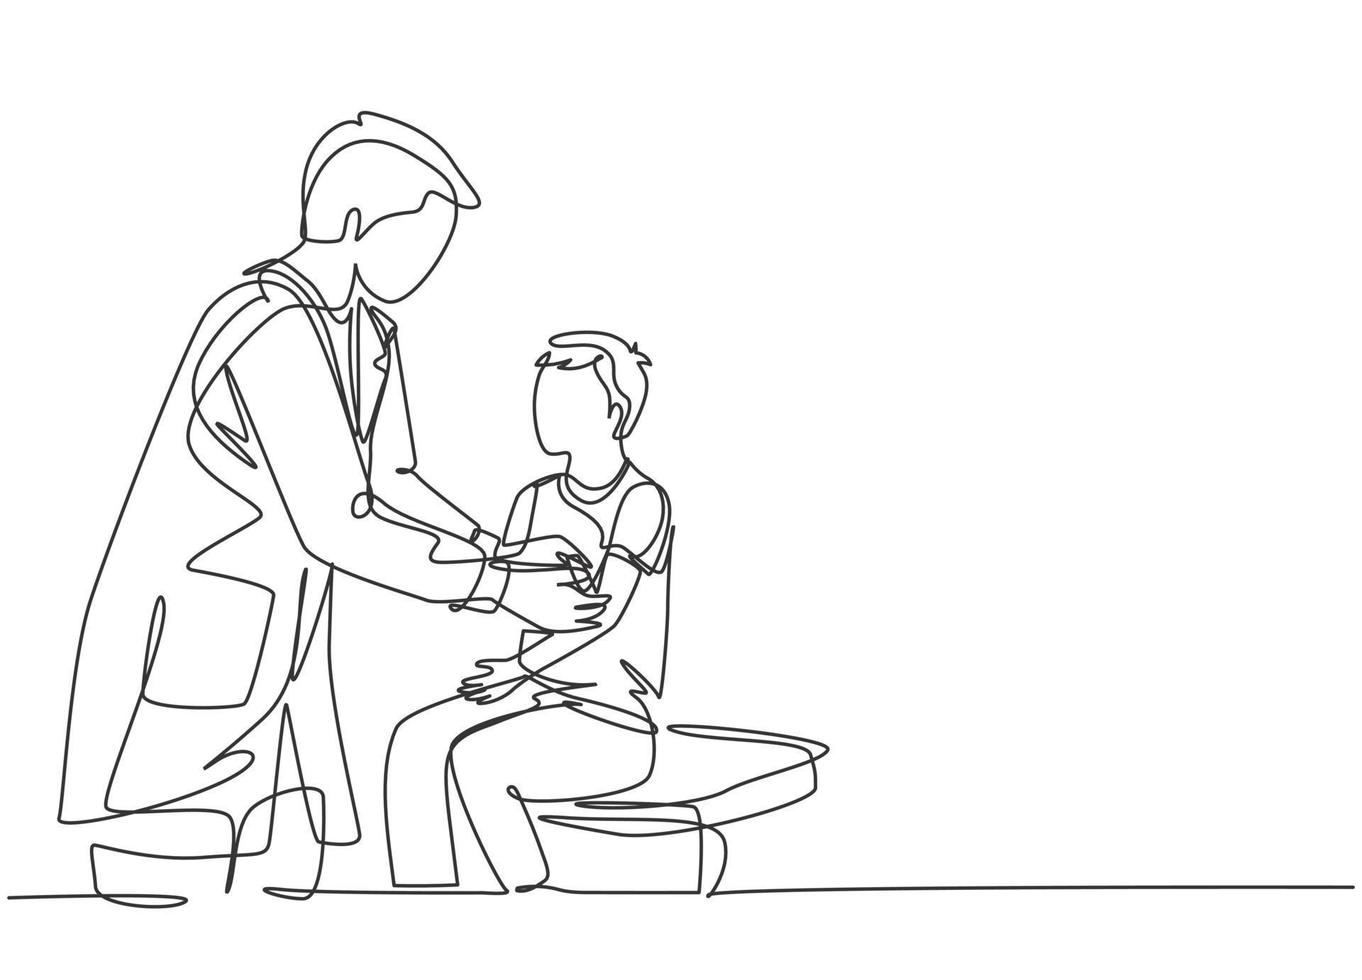 un dibujo de una sola línea de un médico que brinda tratamiento de ayuda médica colocando un vendaje a un niño herido. Ilustración de vector de diseño de dibujo de línea continua de concepto de tratamiento médico